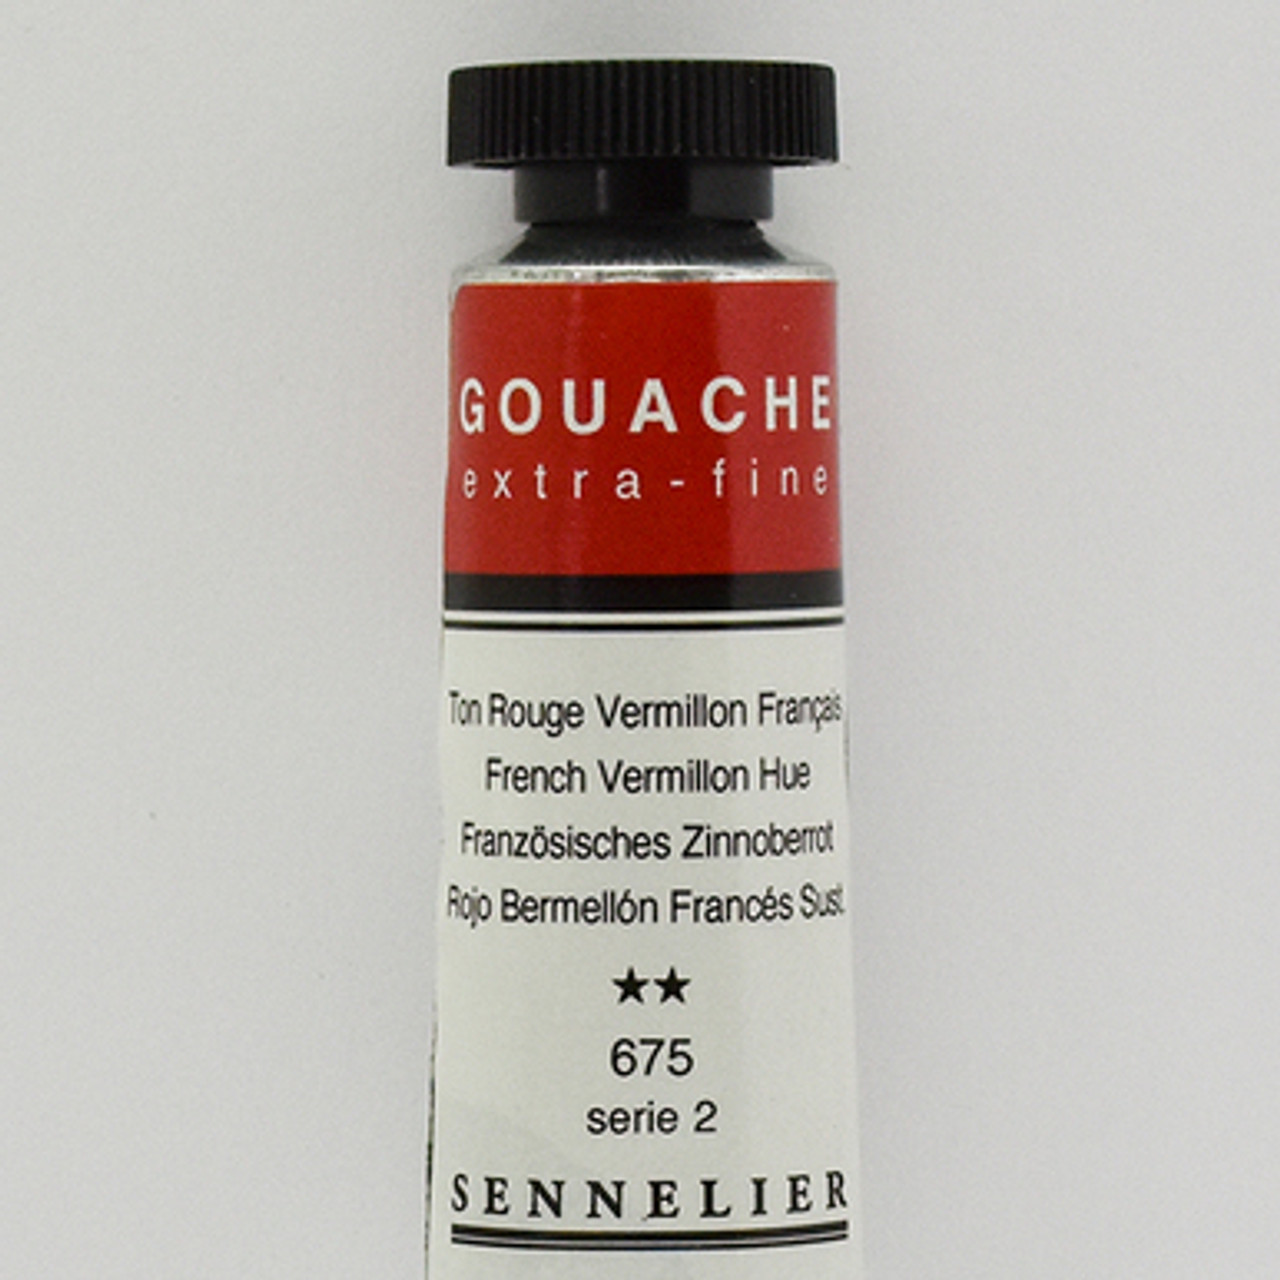 SENNELIER-GOUACHE-French-Vermilion-Hue